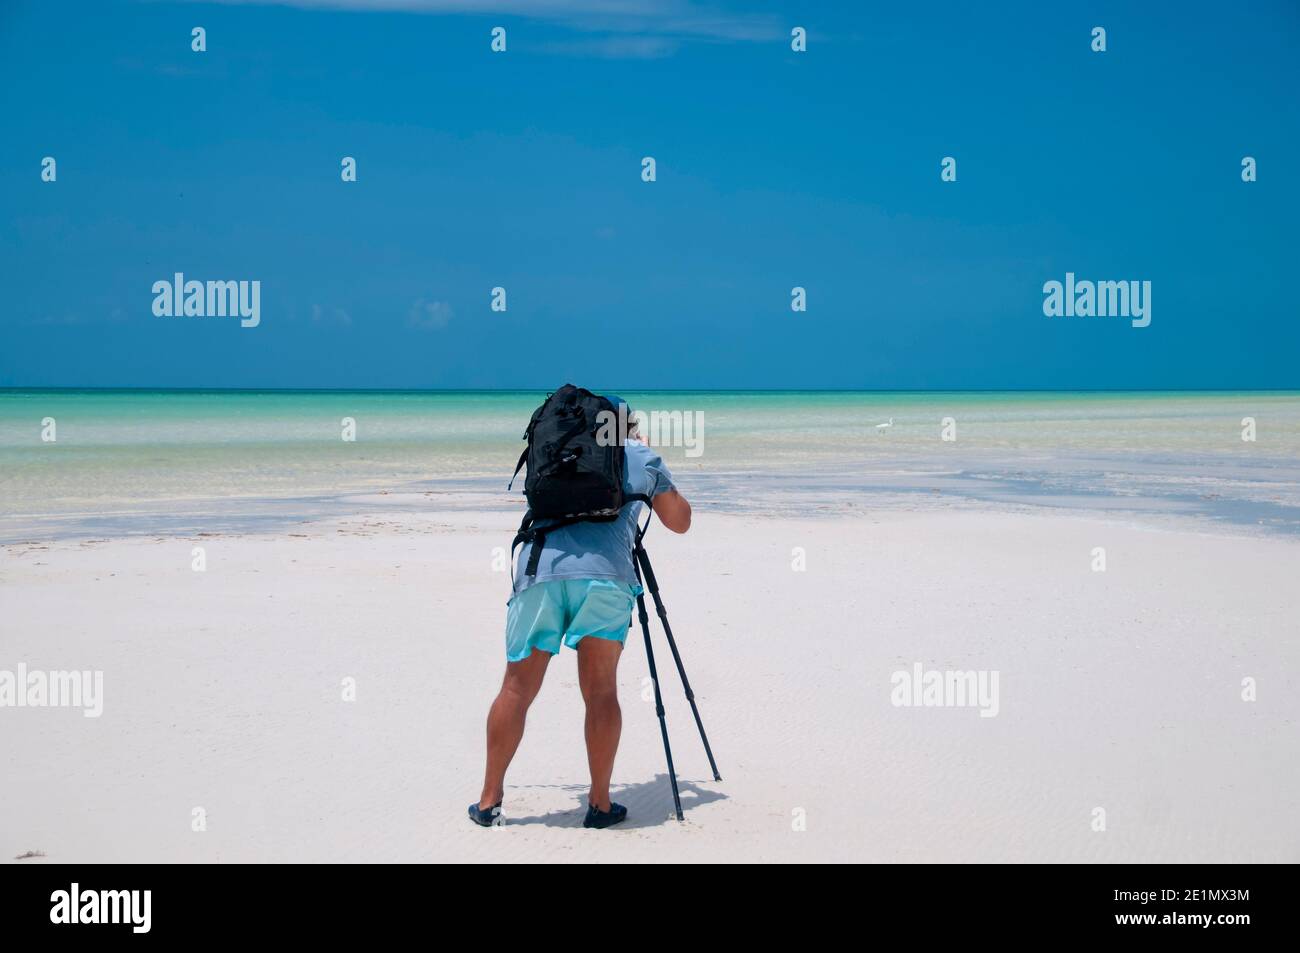 Un fotografo con la sua fotocamera scatta fotografie di paesaggi a bassa marea sull'isola di Holbox, Messico. Sullo sfondo il cielo blu e un airone Foto Stock